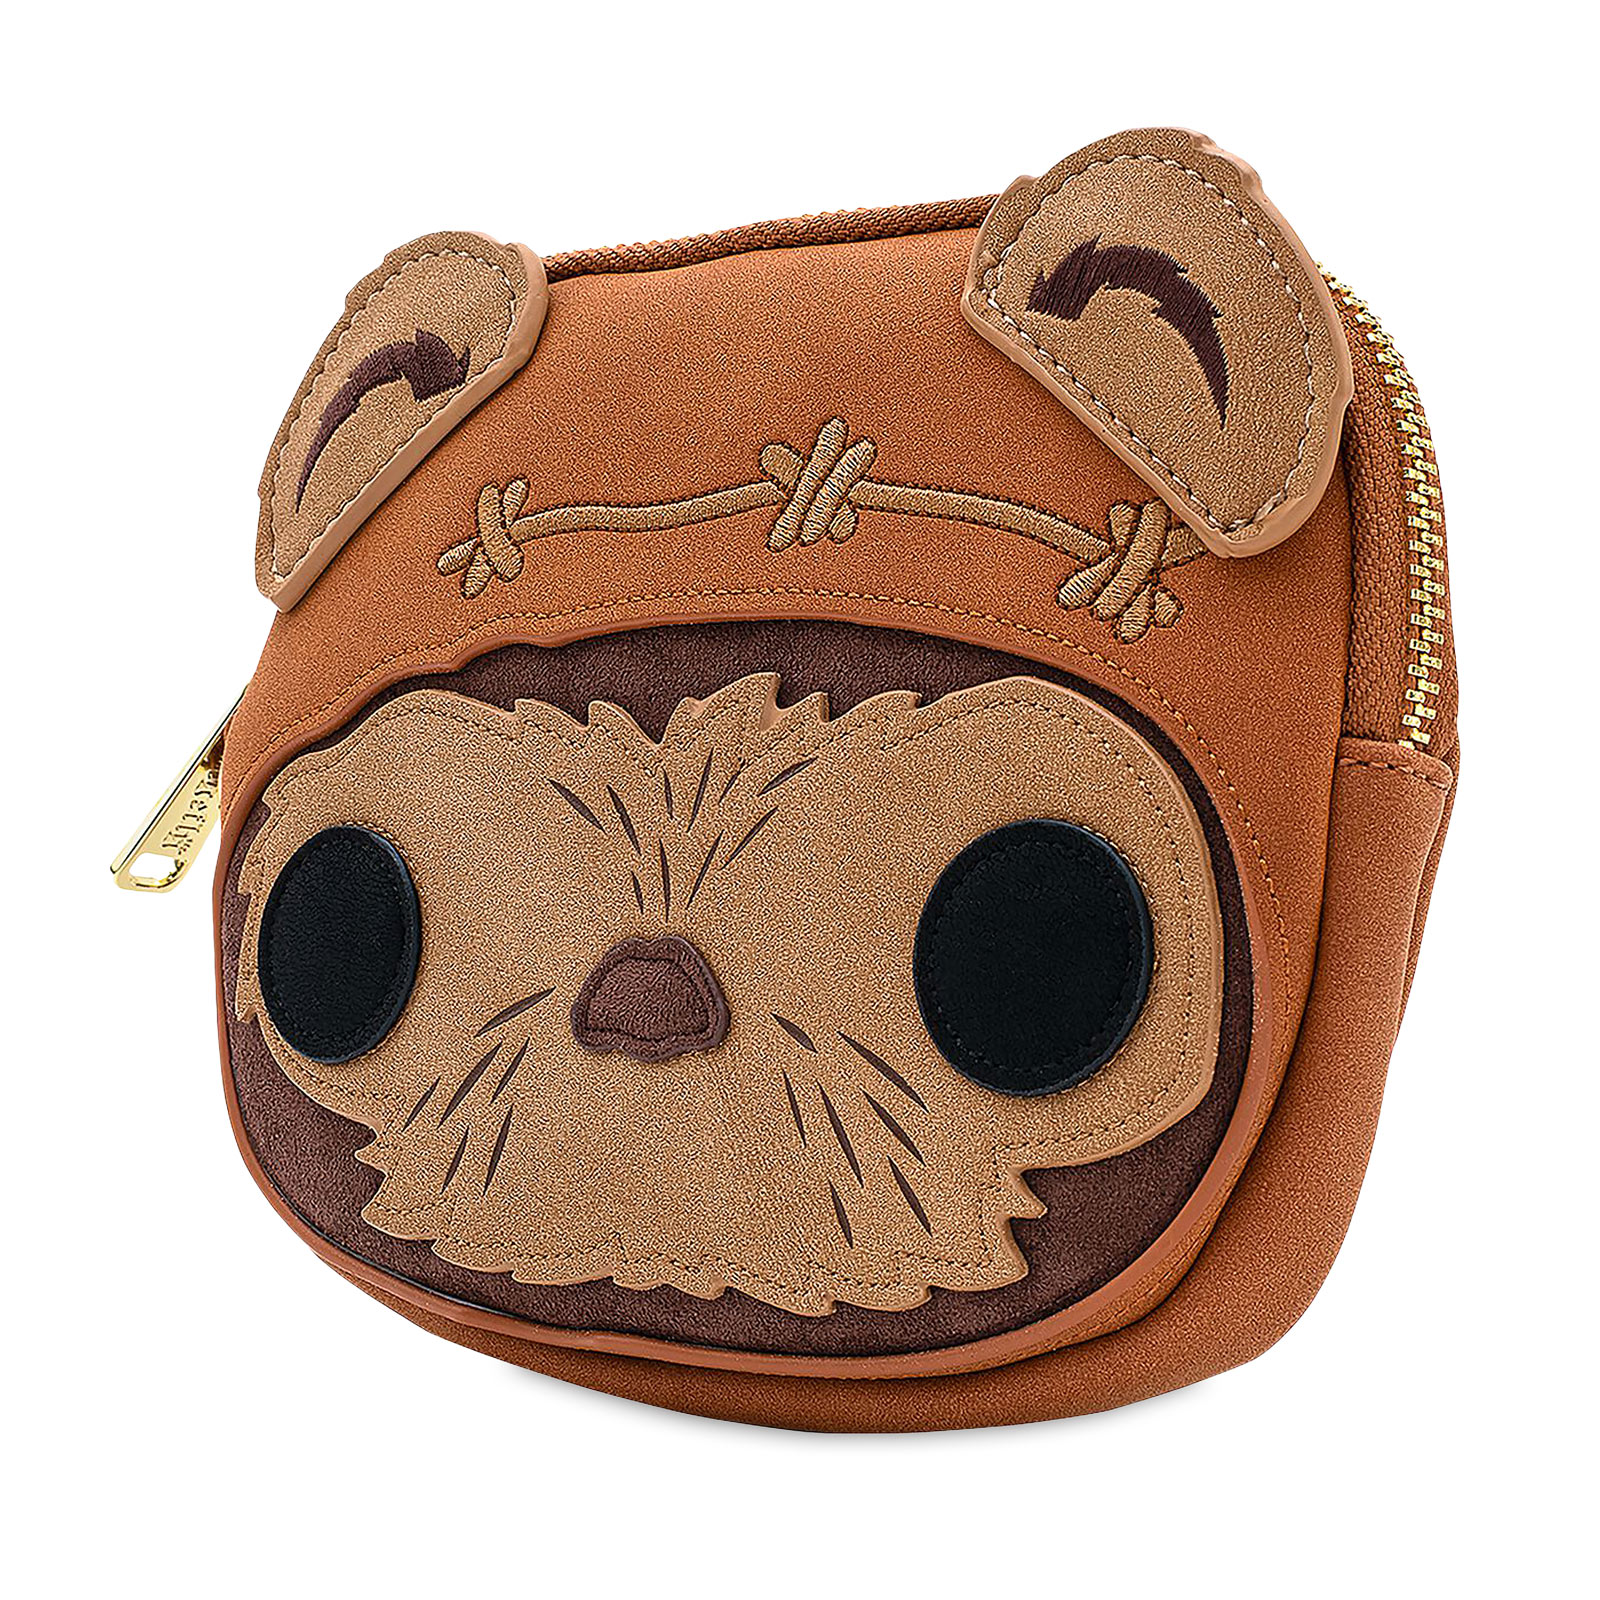 Star Wars - Wicket Mini Handbag